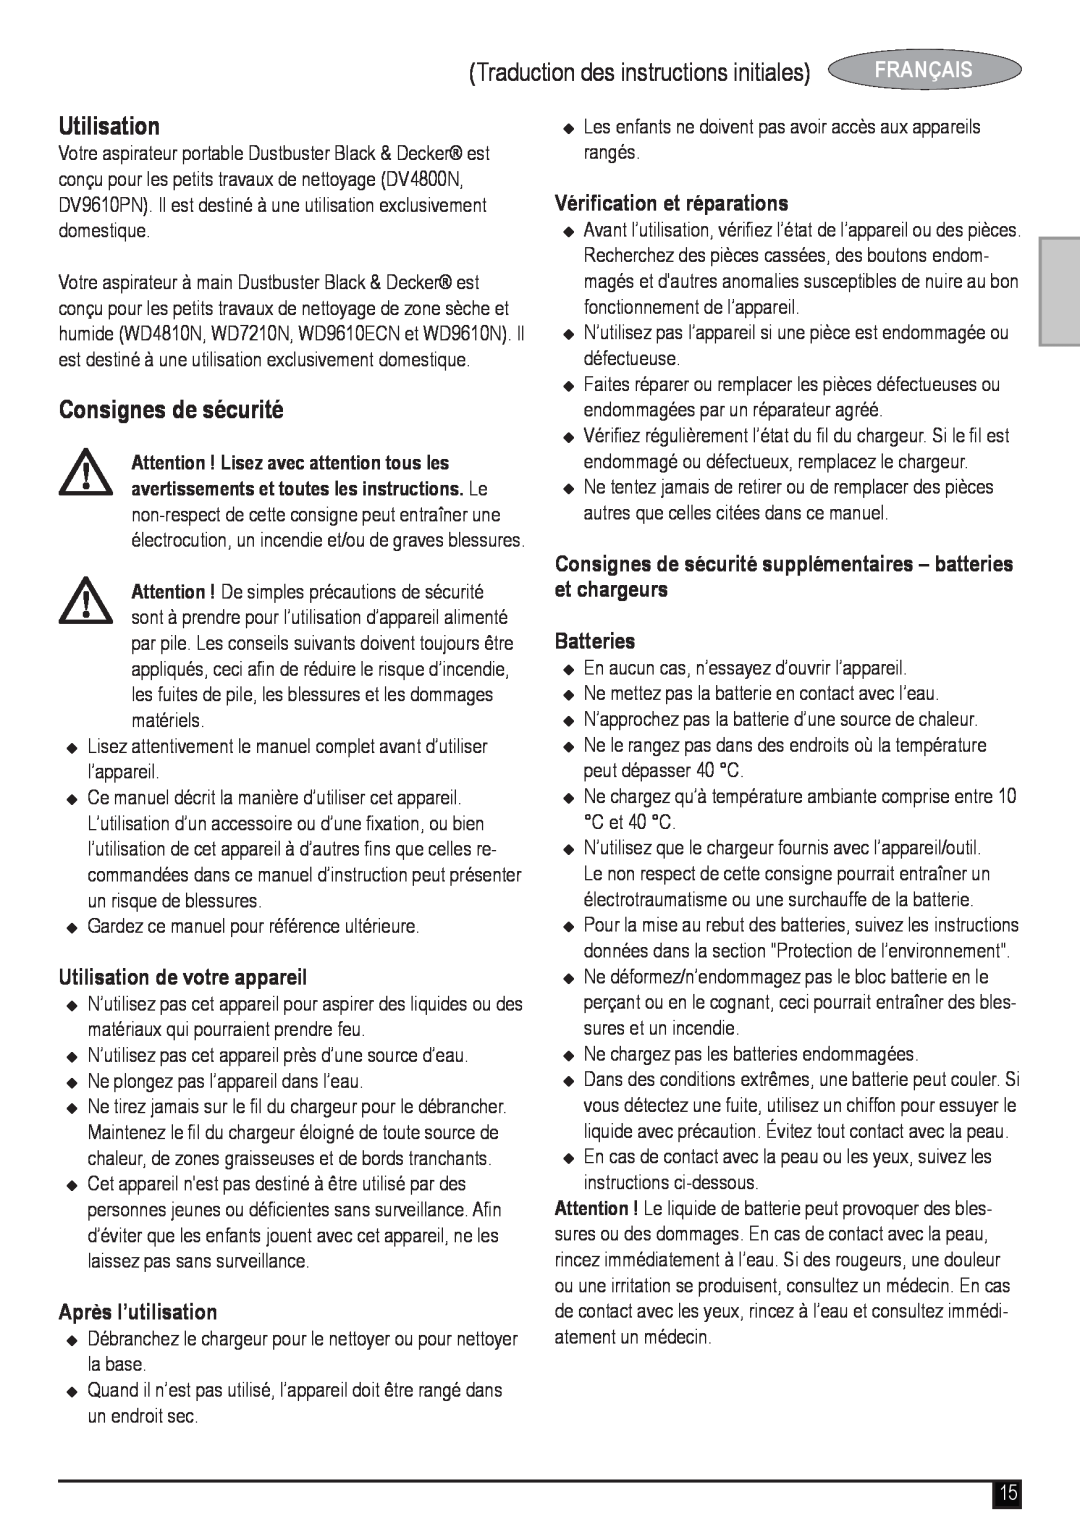 Black & Decker WD4810N manual Traduction des instructions initiales, Français, Utilisation de votre appareil, Batteries 